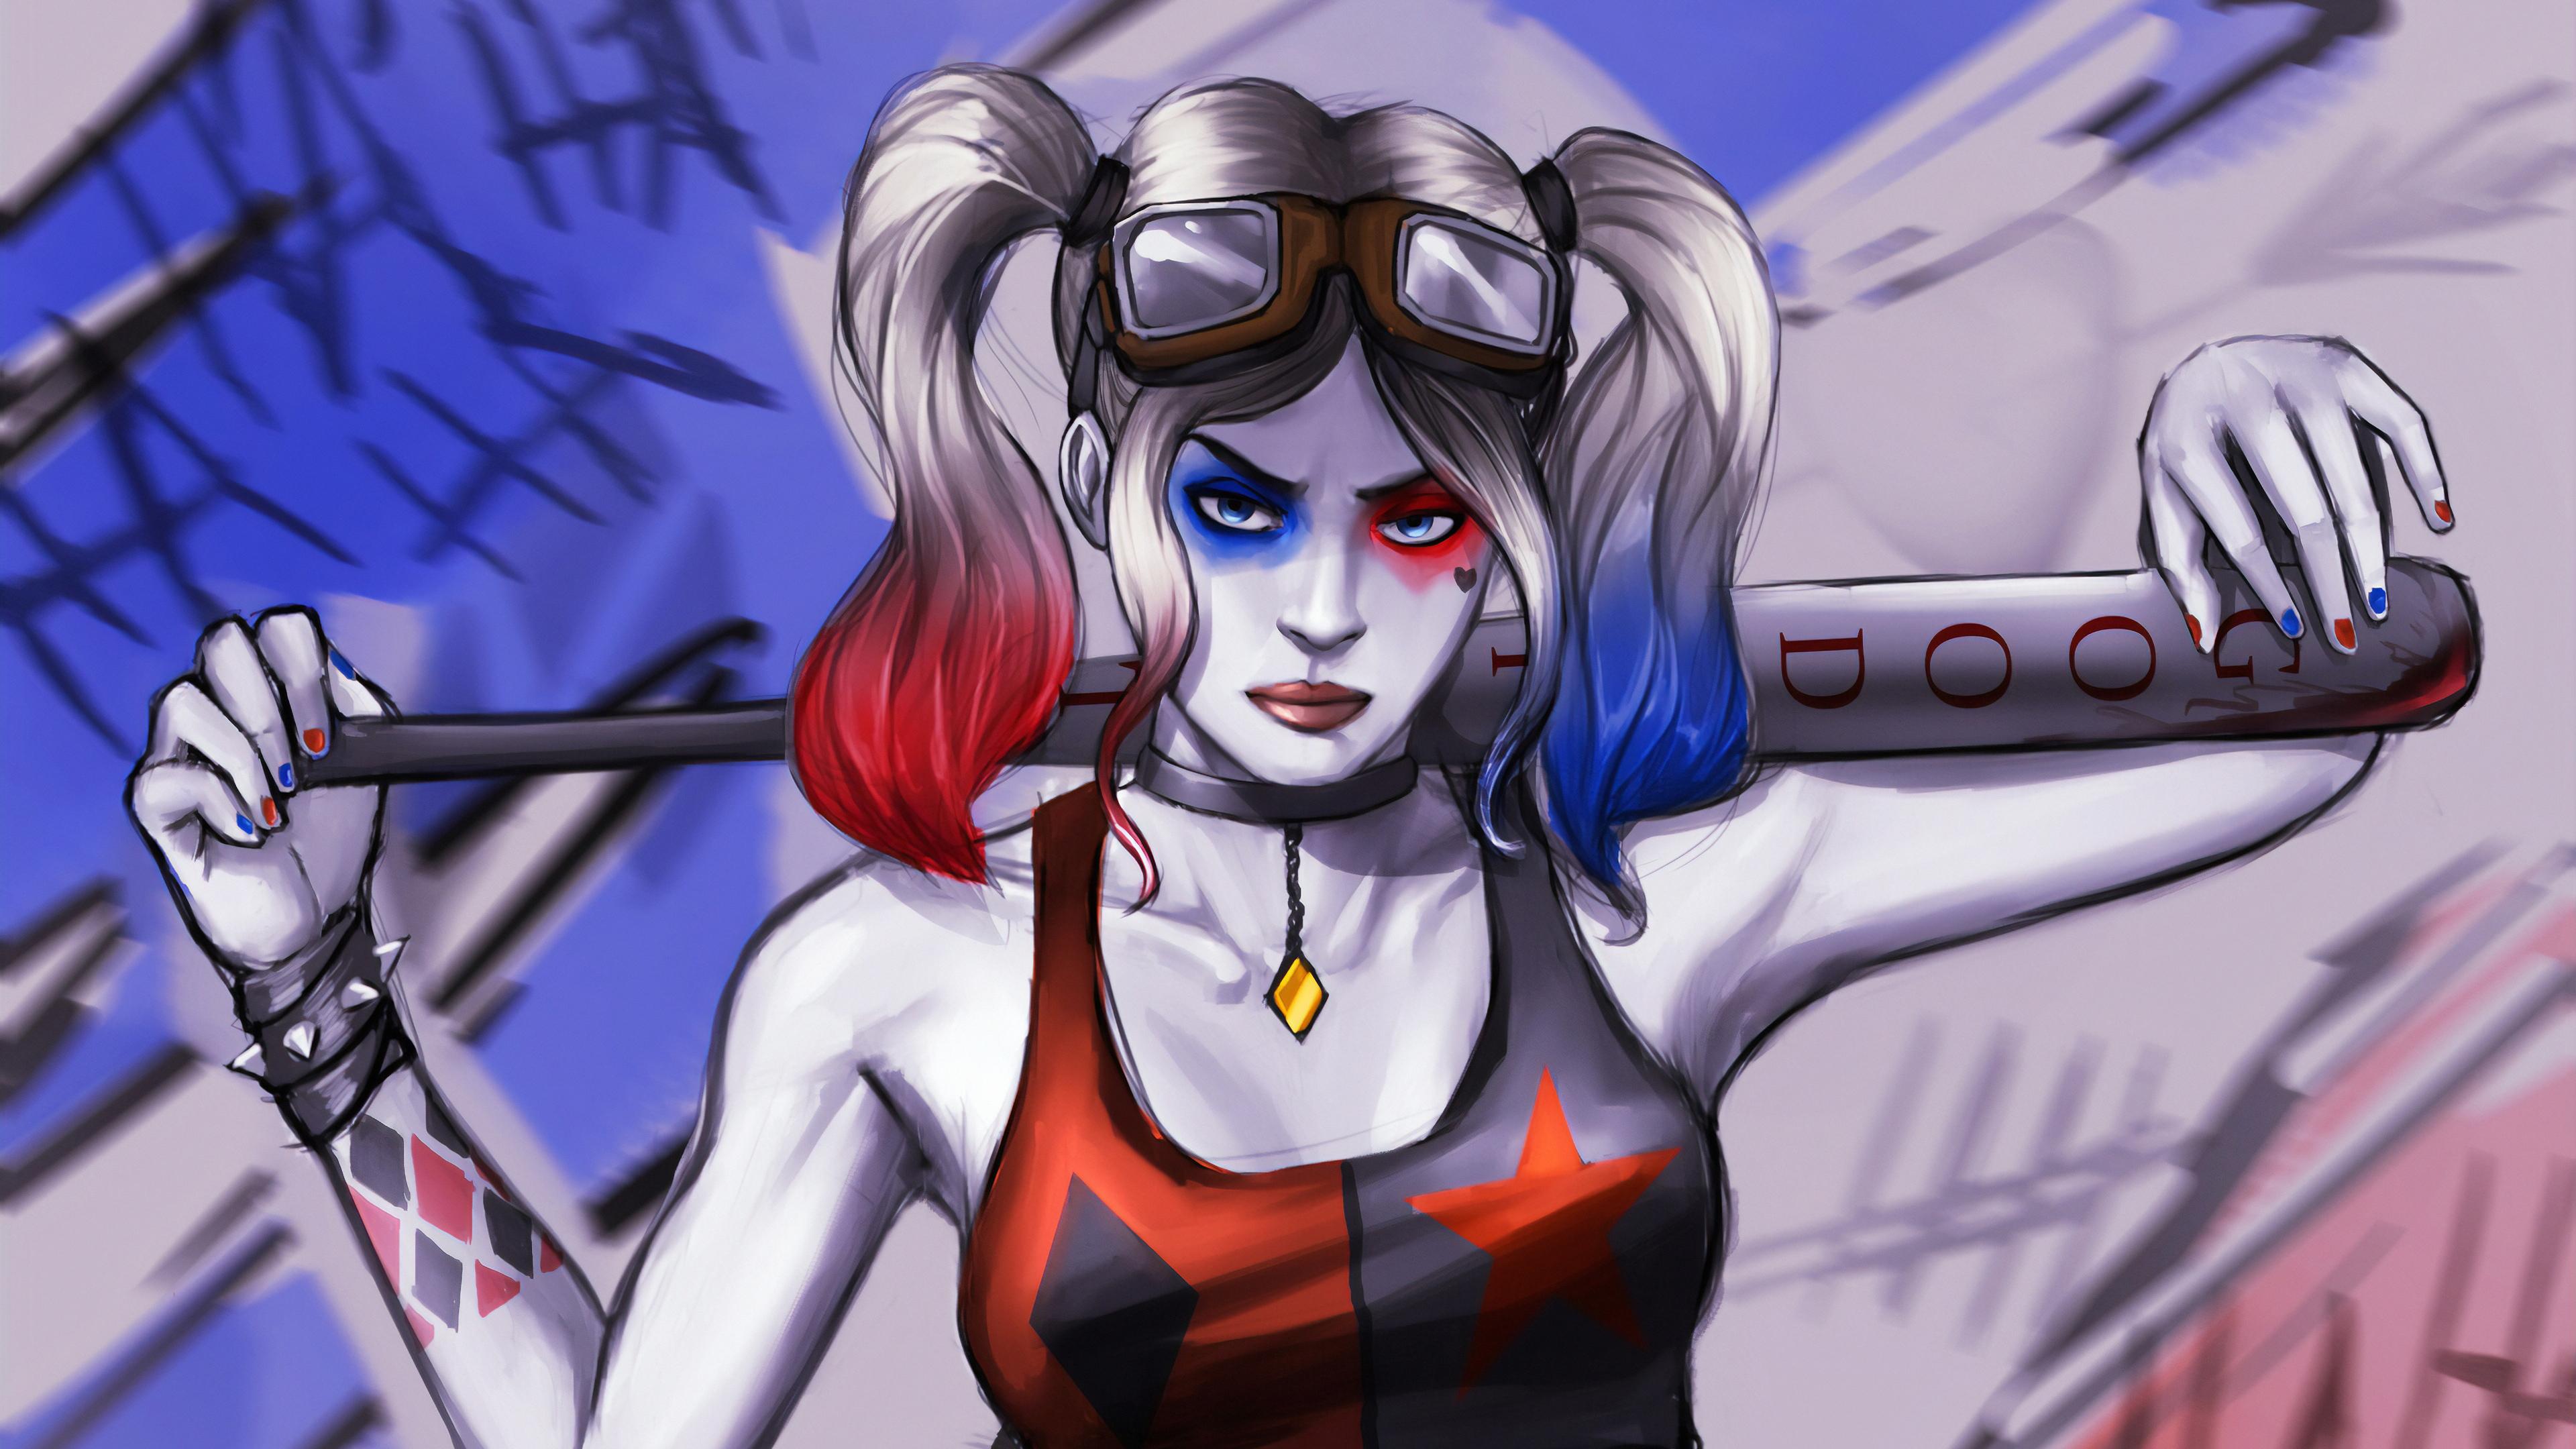 3840 x 2160 · jpeg - Harley Quinn Sketch Arts, HD Superheroes, 4k Wallpapers, Images ...